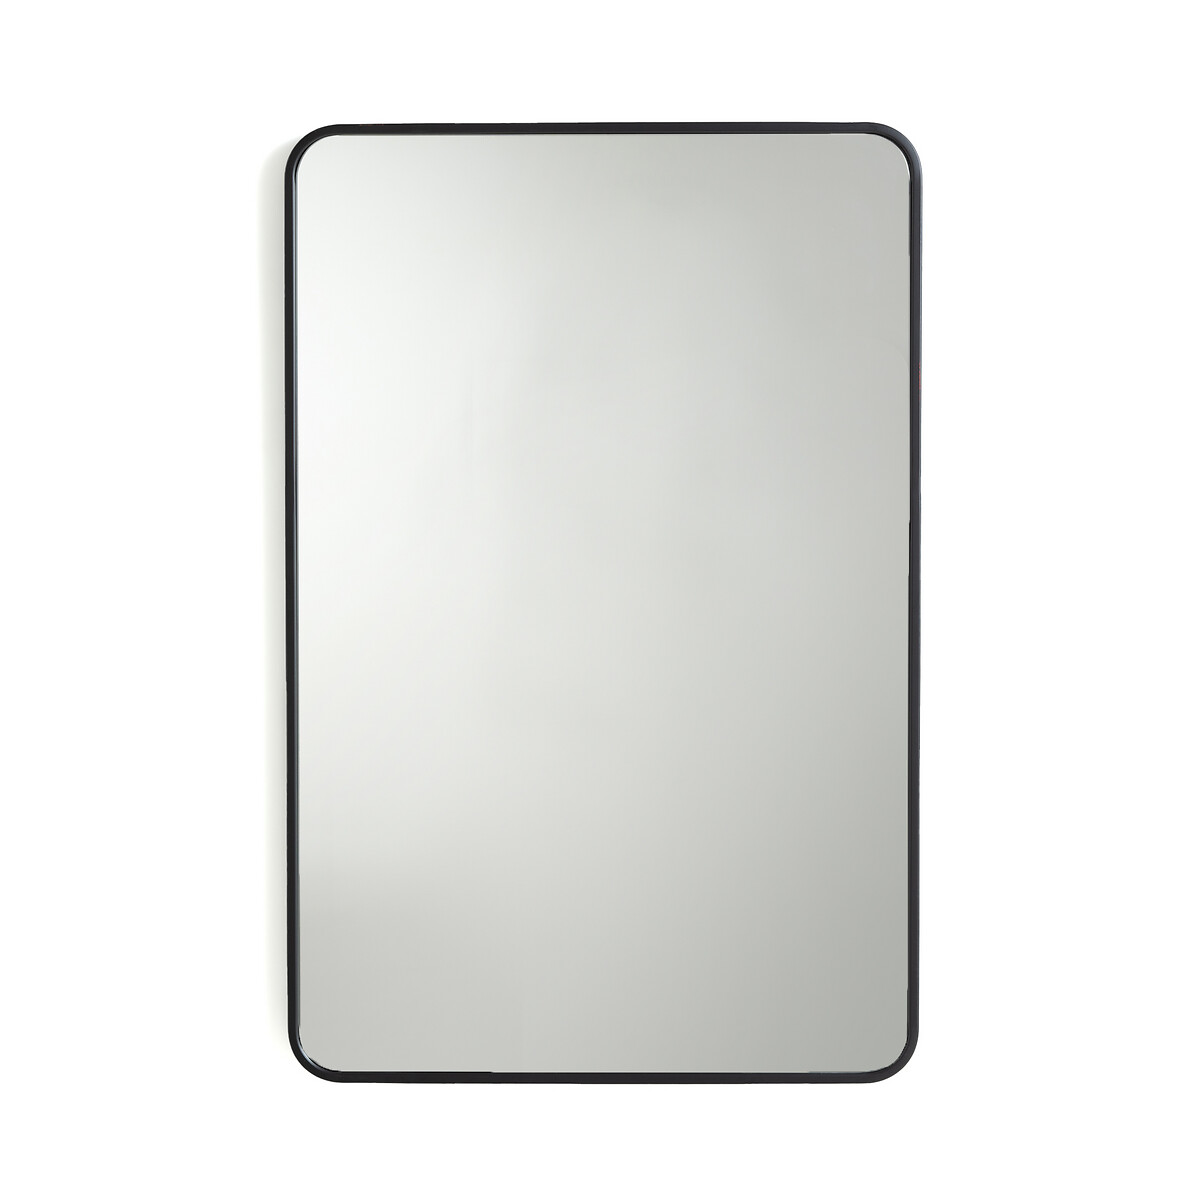 Зеркало с отделкой металлом В90 см Iodus единый размер черный зеркало квадратное с отделкой металлом в90 см iodus единый размер желтый